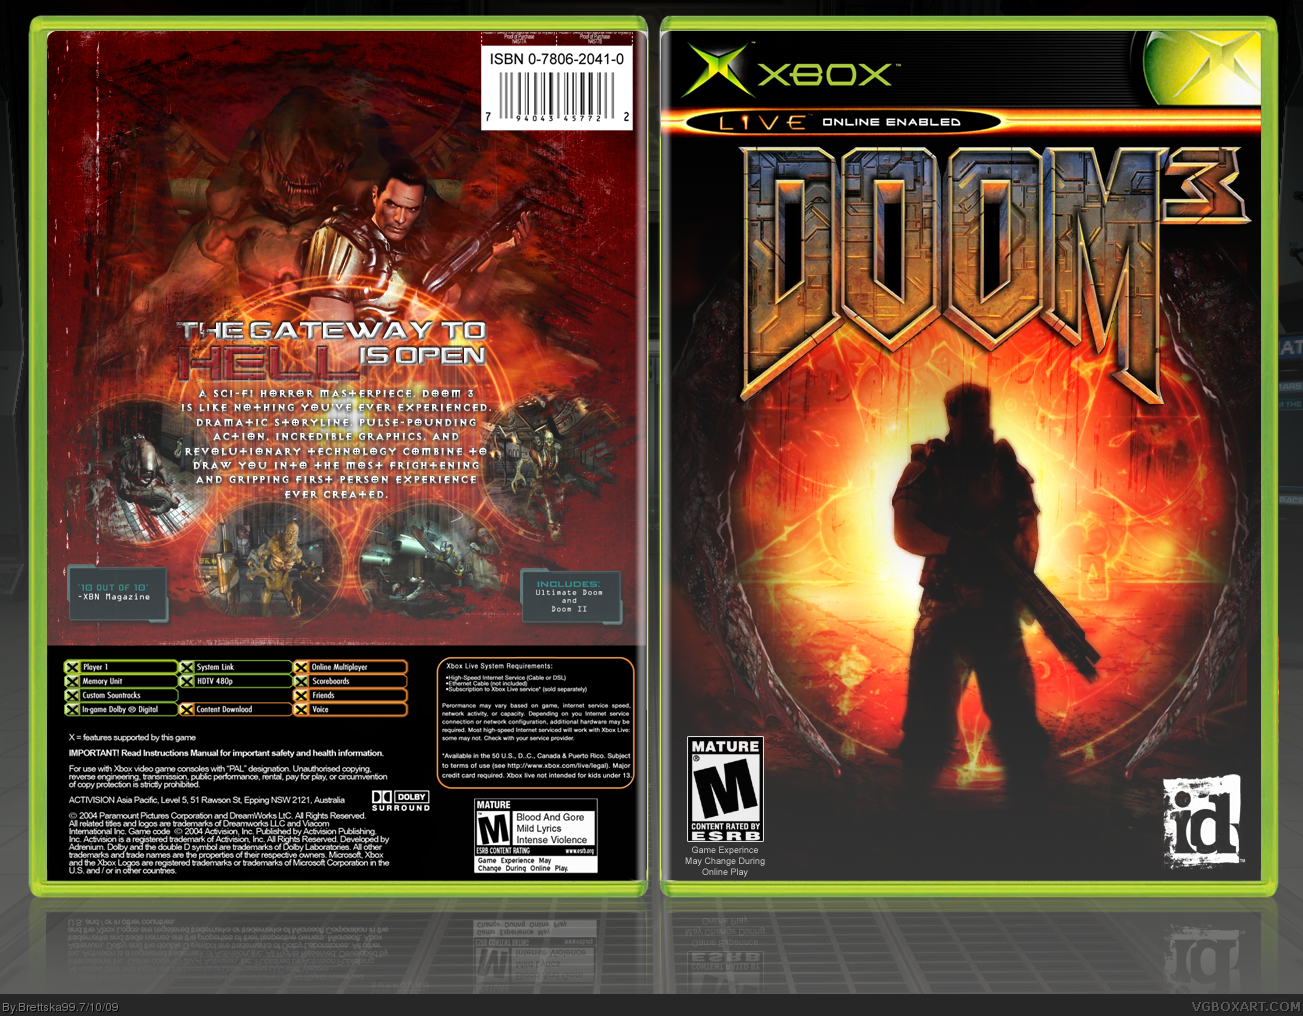 Doom 3 box cover